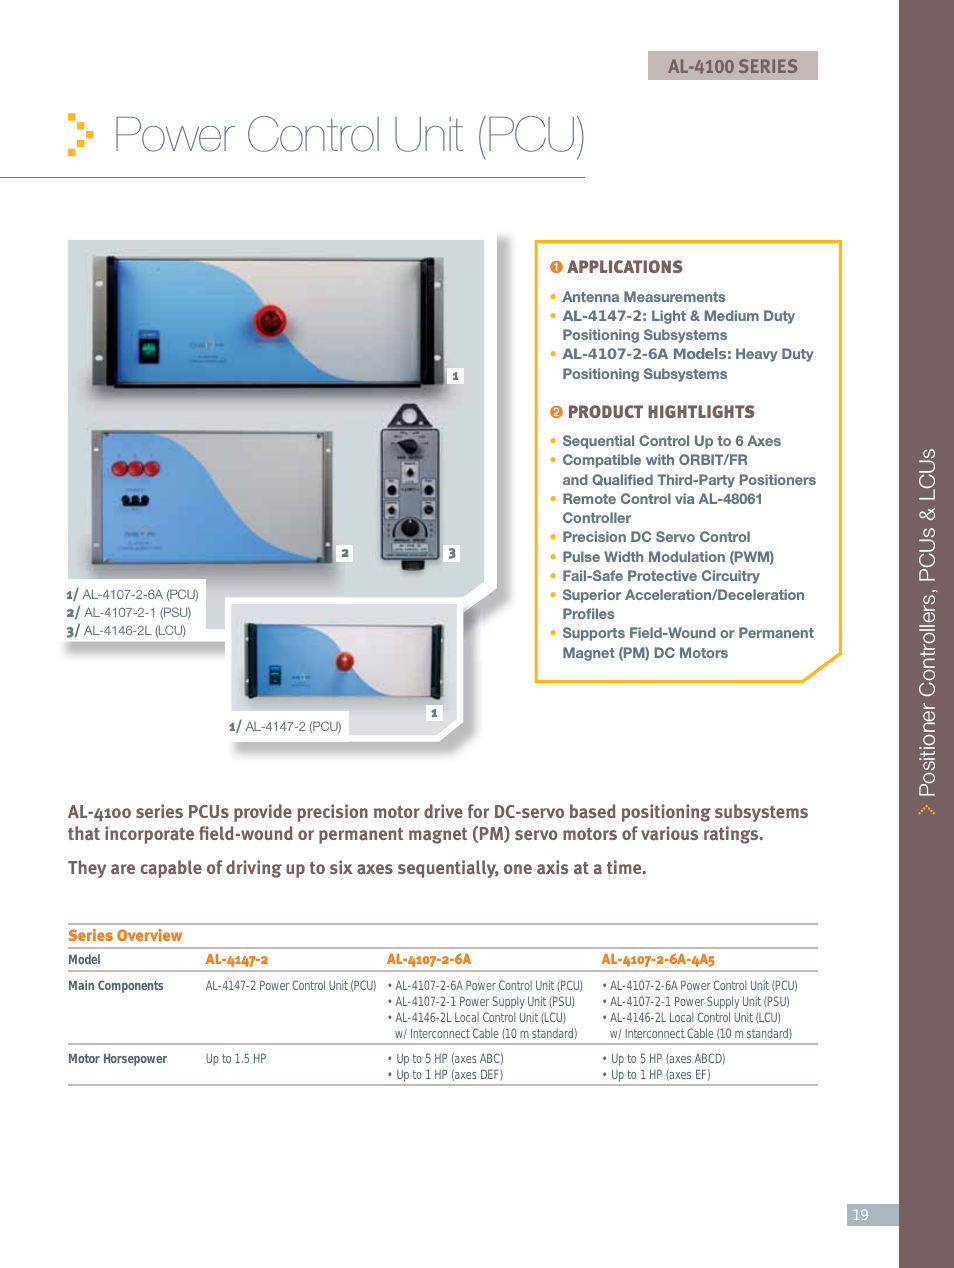 Power Control Units (PCUs): AL-4107-2-6A-4A5